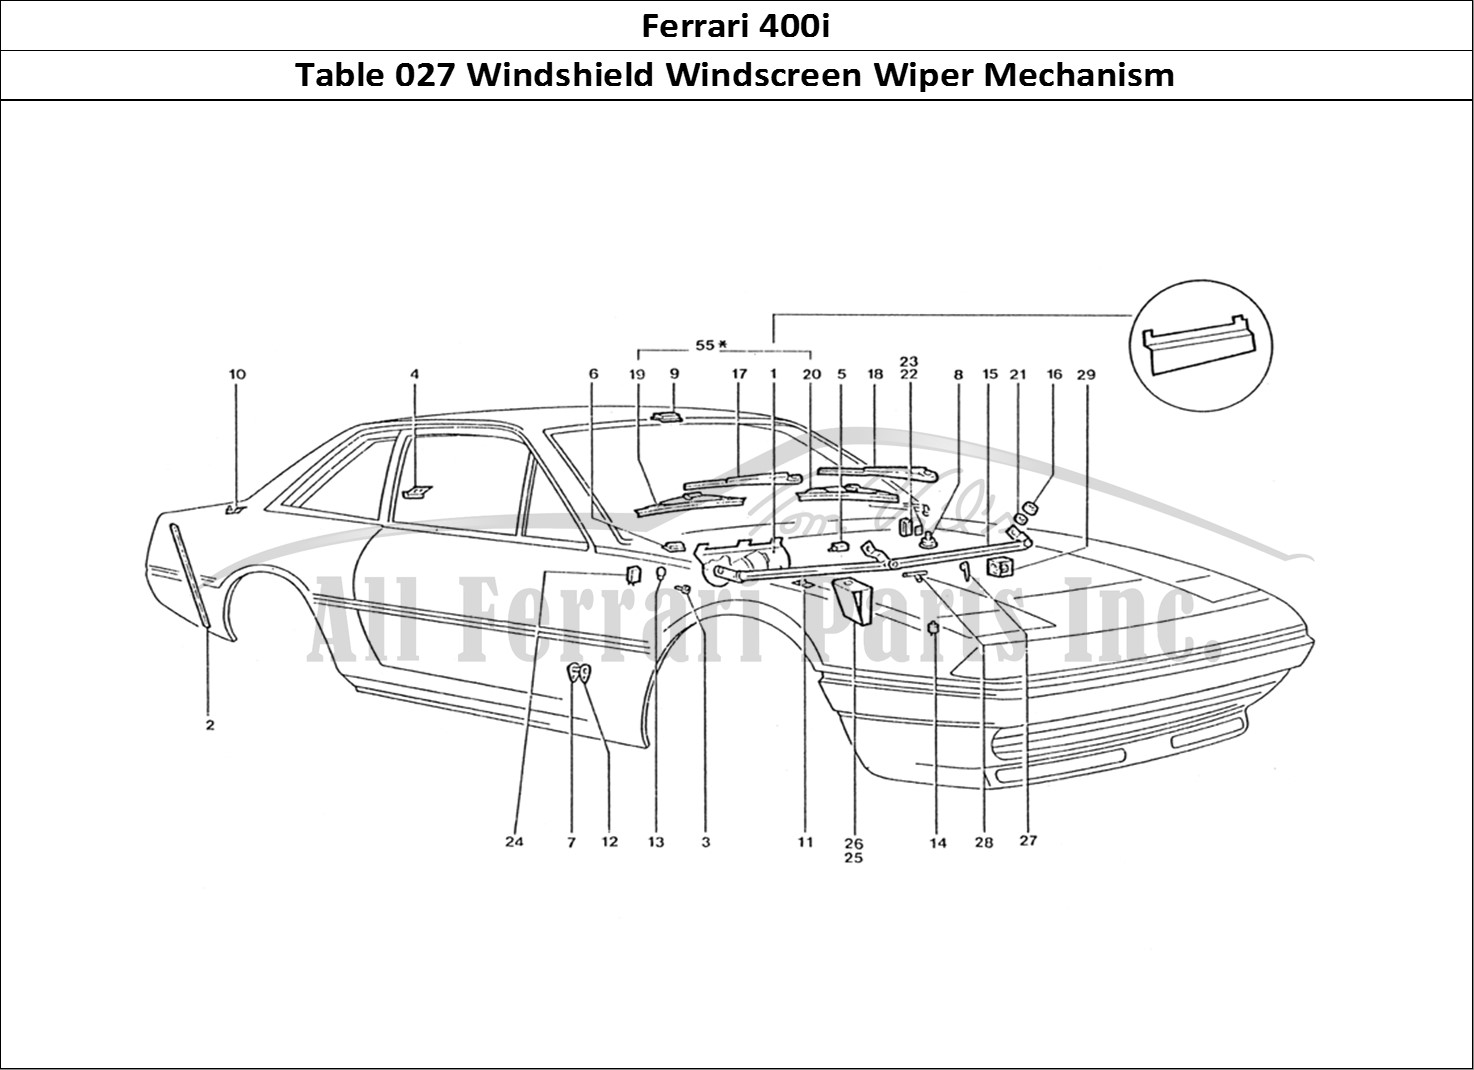 Ferrari Parts Ferrari 400 GT (Coachwork) Page 027 Wiper Motor & Wiper arms